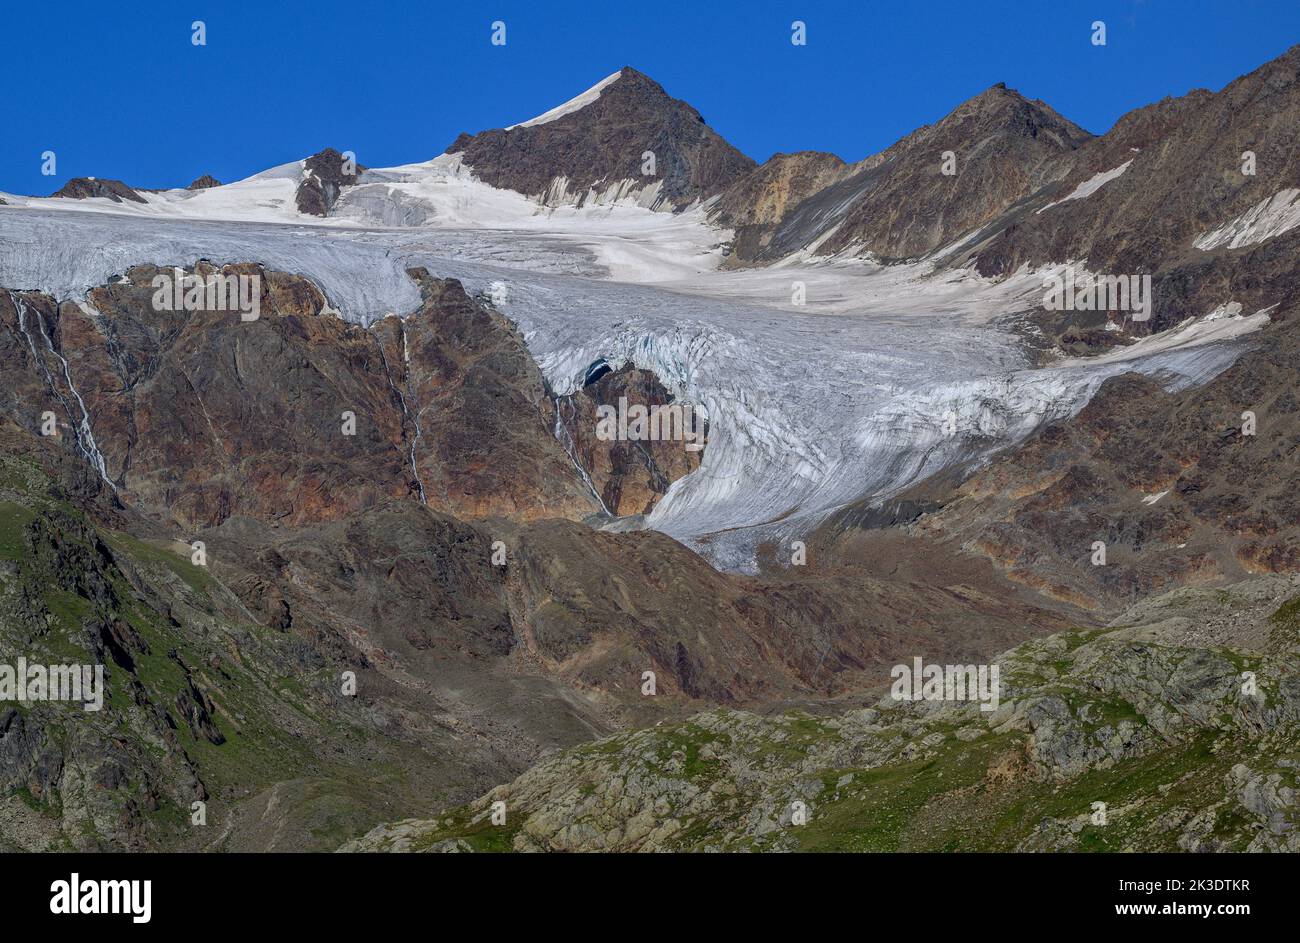 Corno dei Tre Signori  seen from the Gavia Pass, Passo di Gavia, Italian Alps. Stock Photo